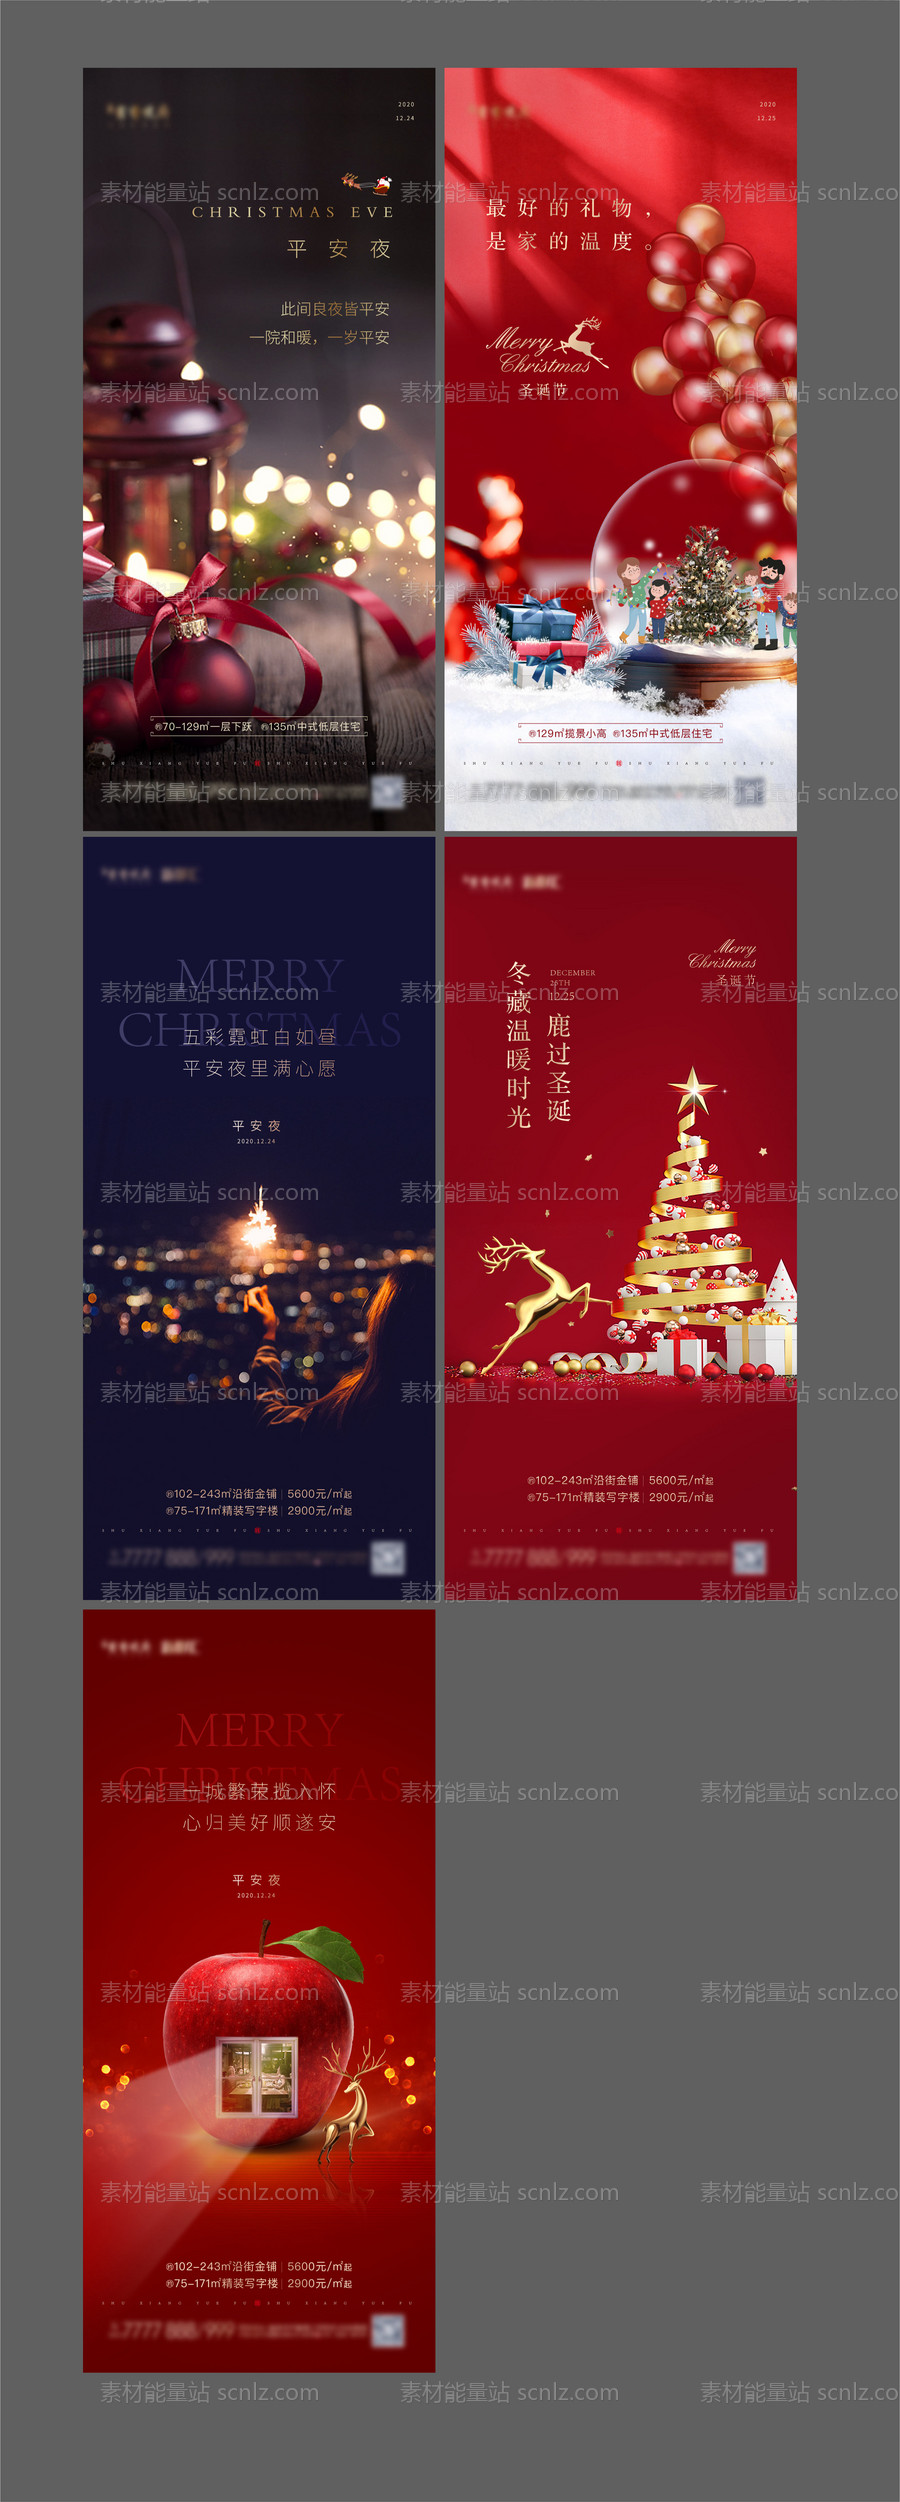 素材能量站-地产圣诞节平安夜微信系列海报